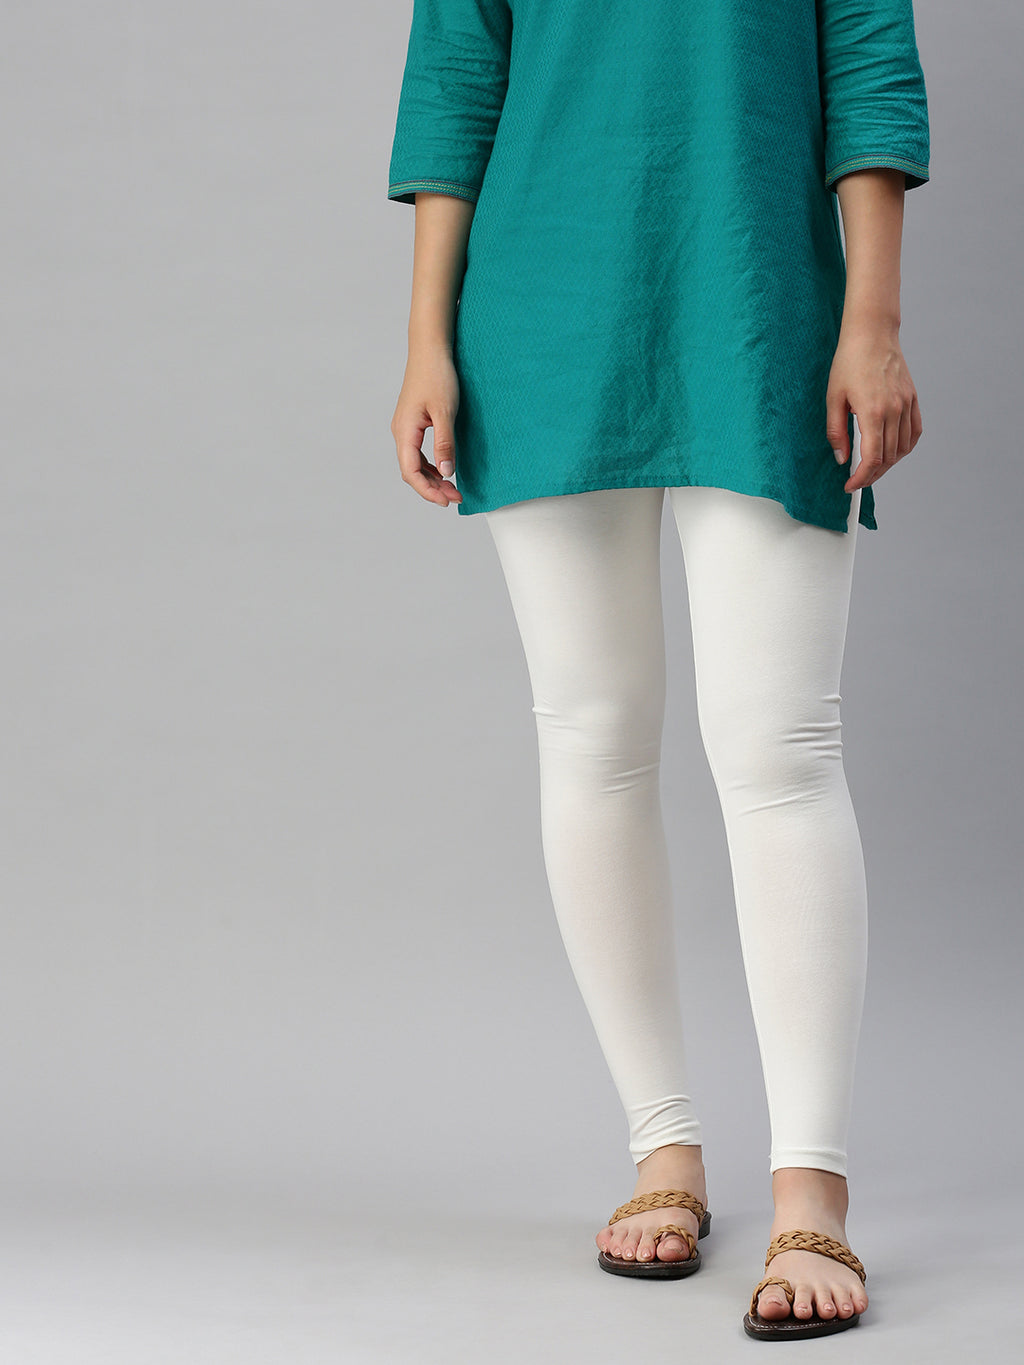 Buy Lyra Women's Off white Solid Churidar Leggings Online at Best